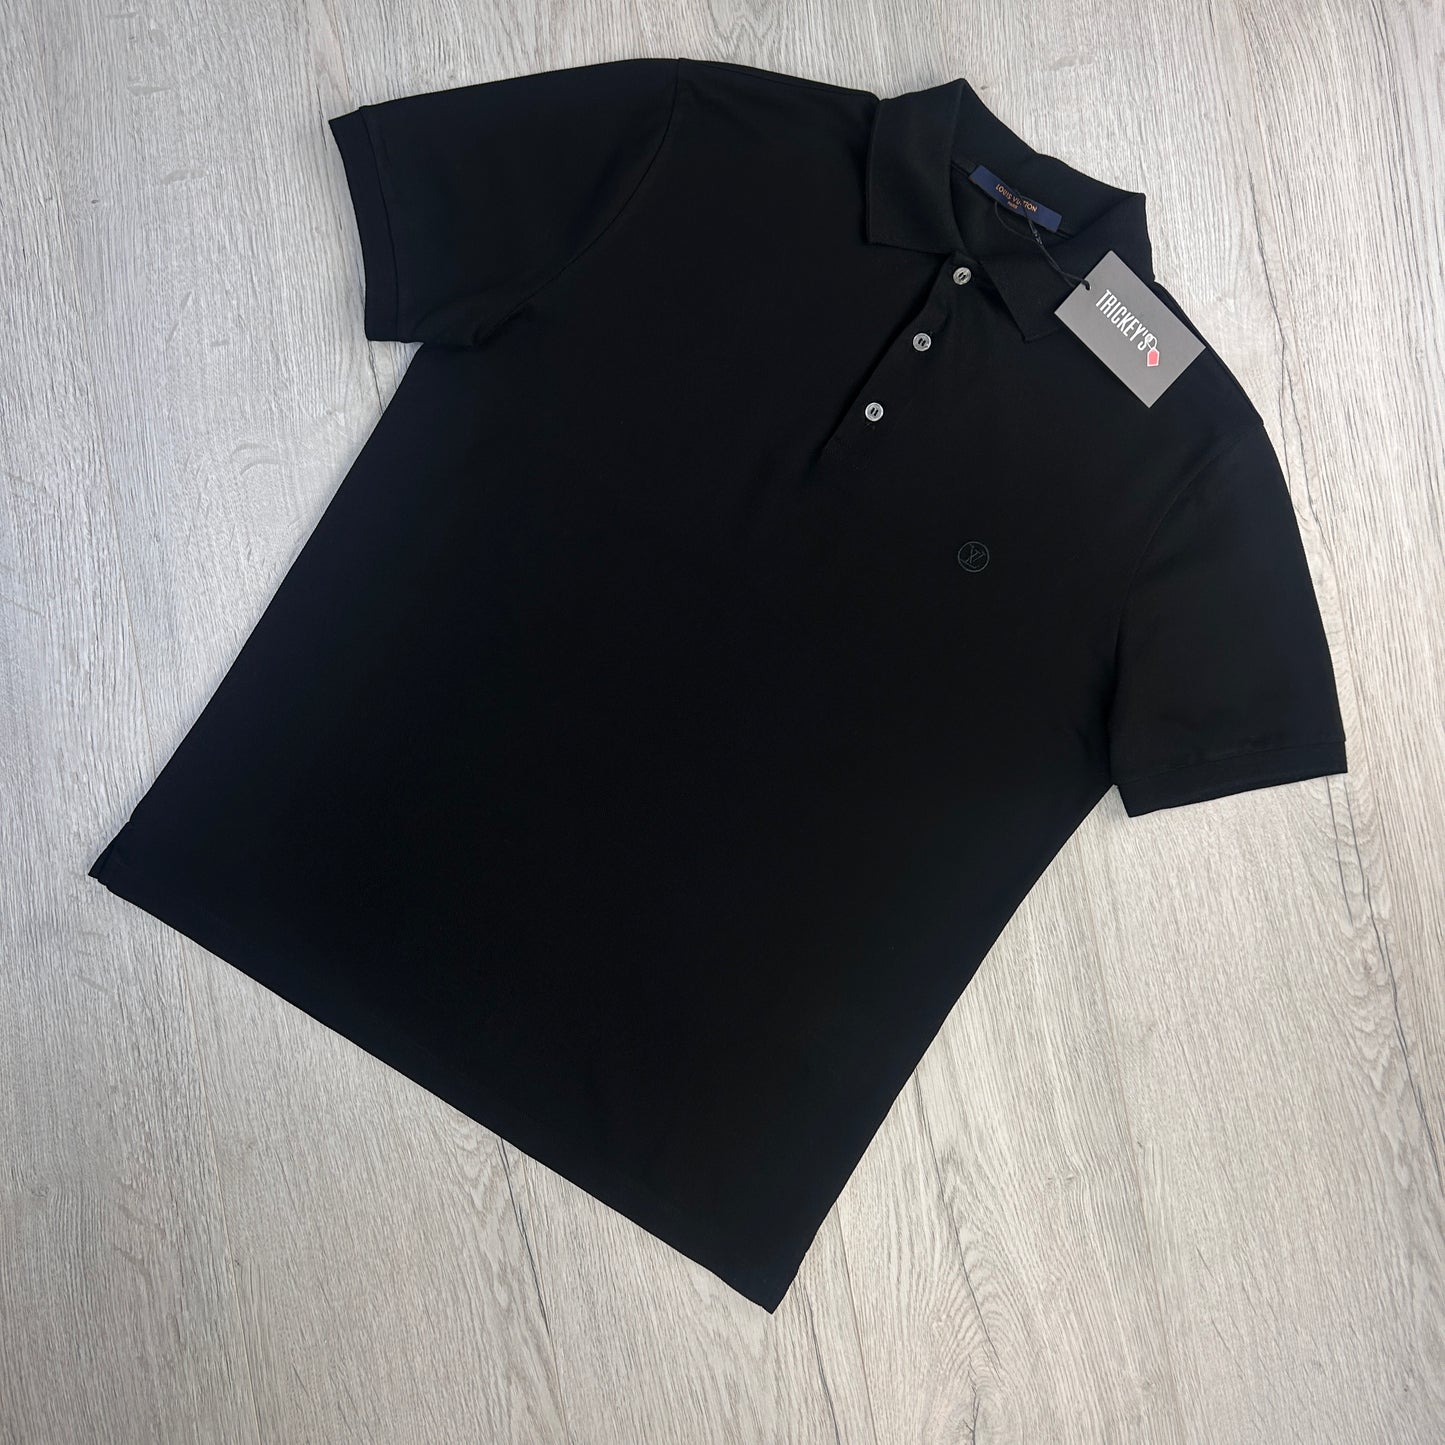 Louis Vuitton Men’s Black Polo Shirt - Medium